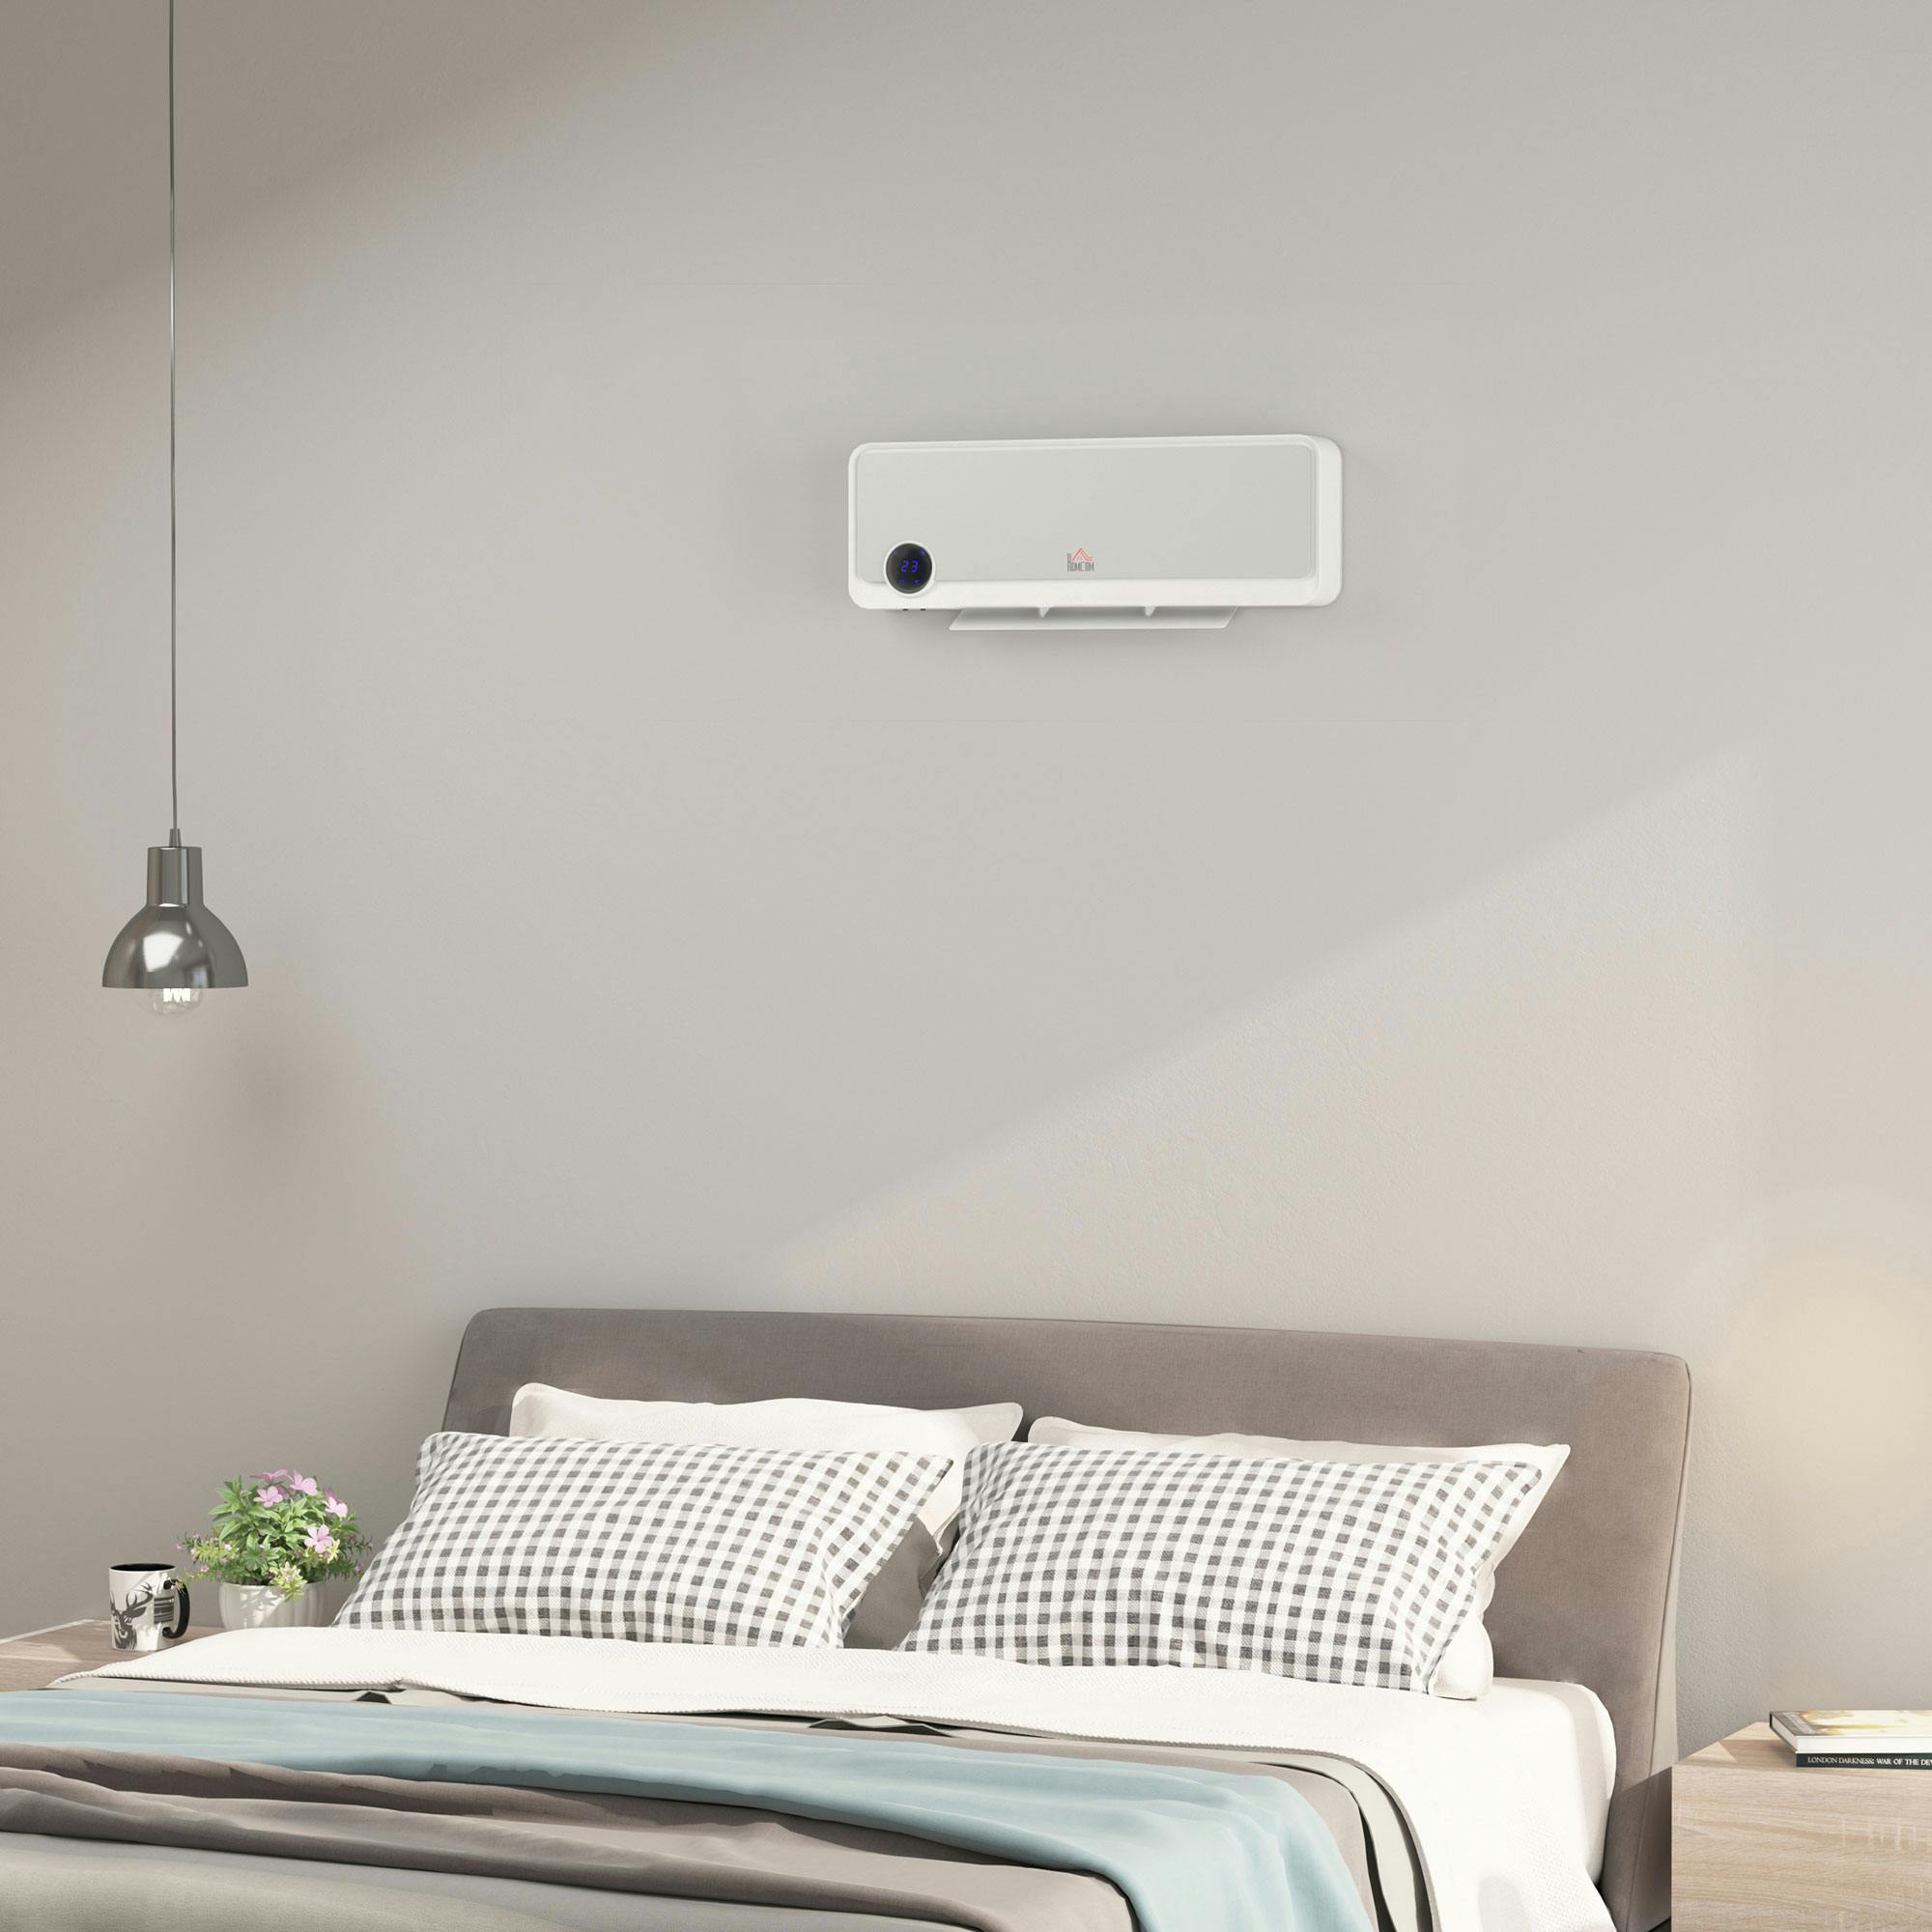  El calefactor Com-Pak para pared con termostato más popular de  1000 W, 120 V, color blanco, por Cadet : Hogar y Cocina